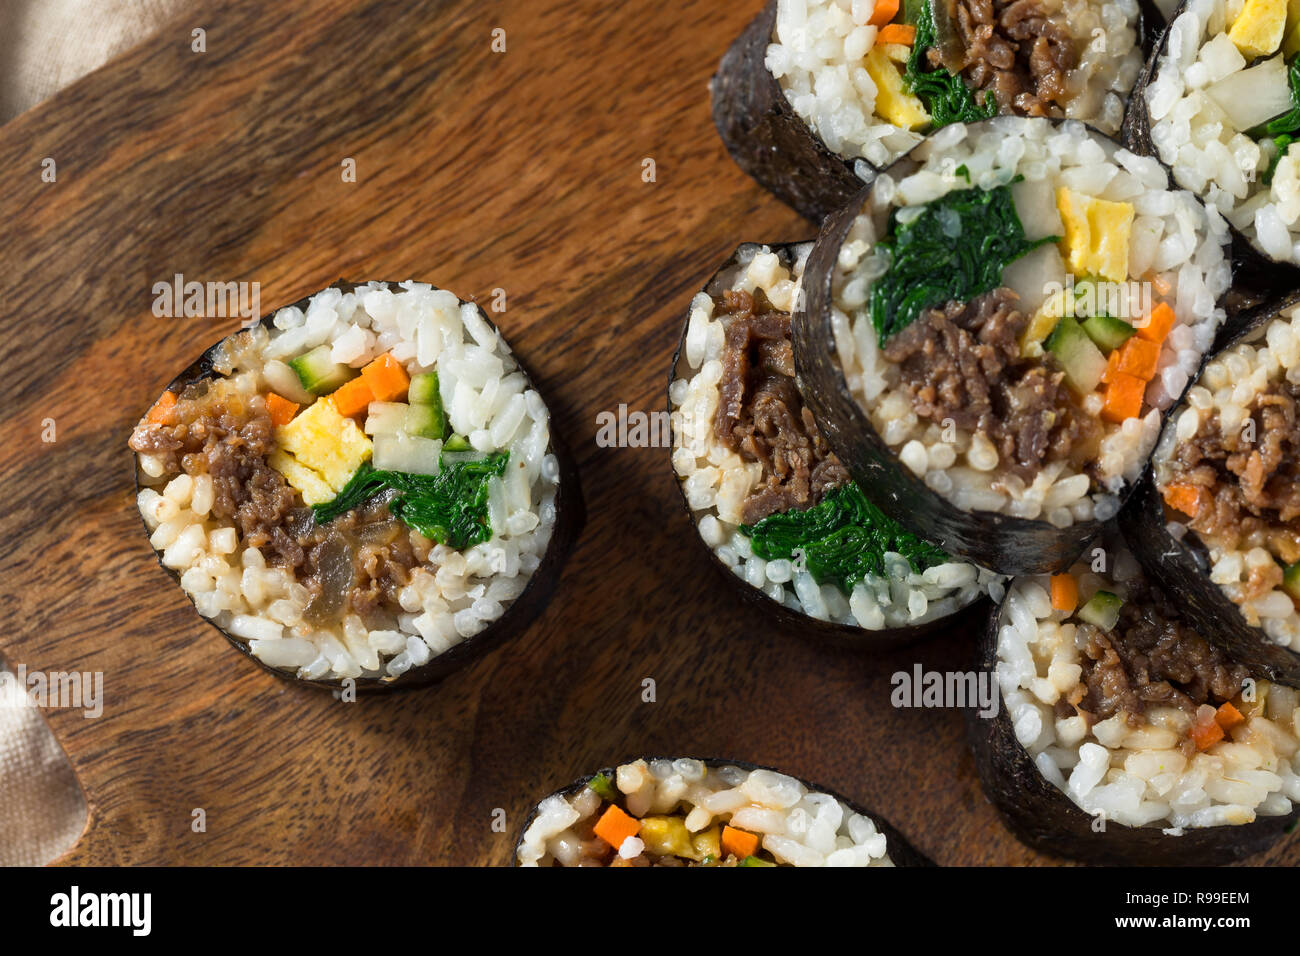 Homemade Korean Kimbap Rice Rolls with Beef and Veggies Stock Photo